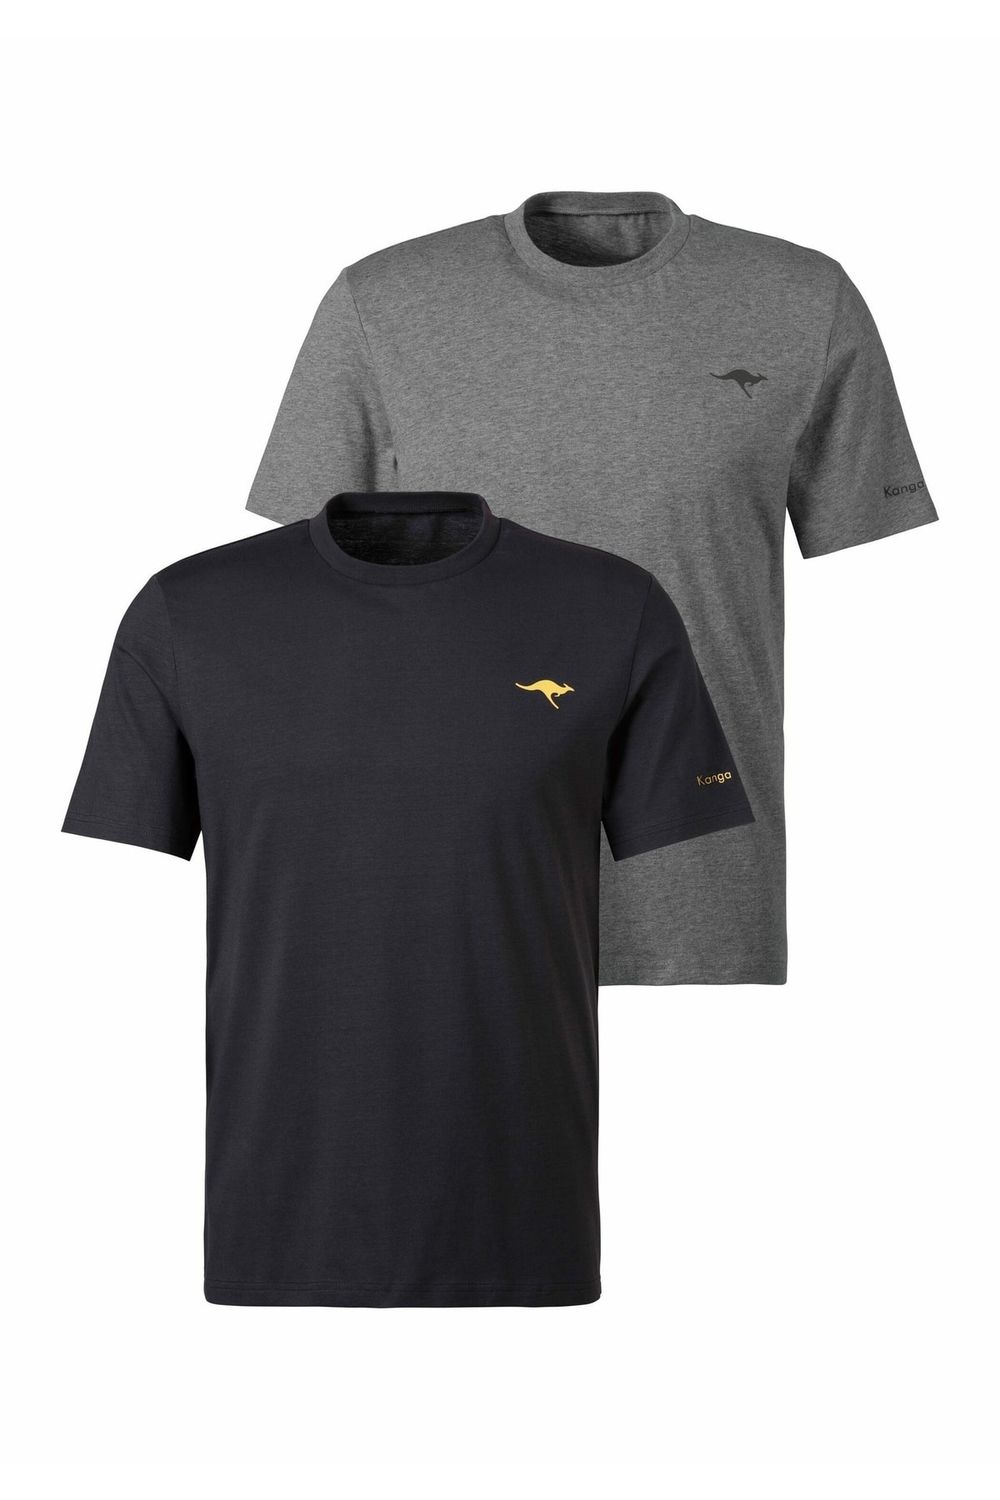 Kangaroos T-Shirt - Grau - Fit Regular Trendyol 